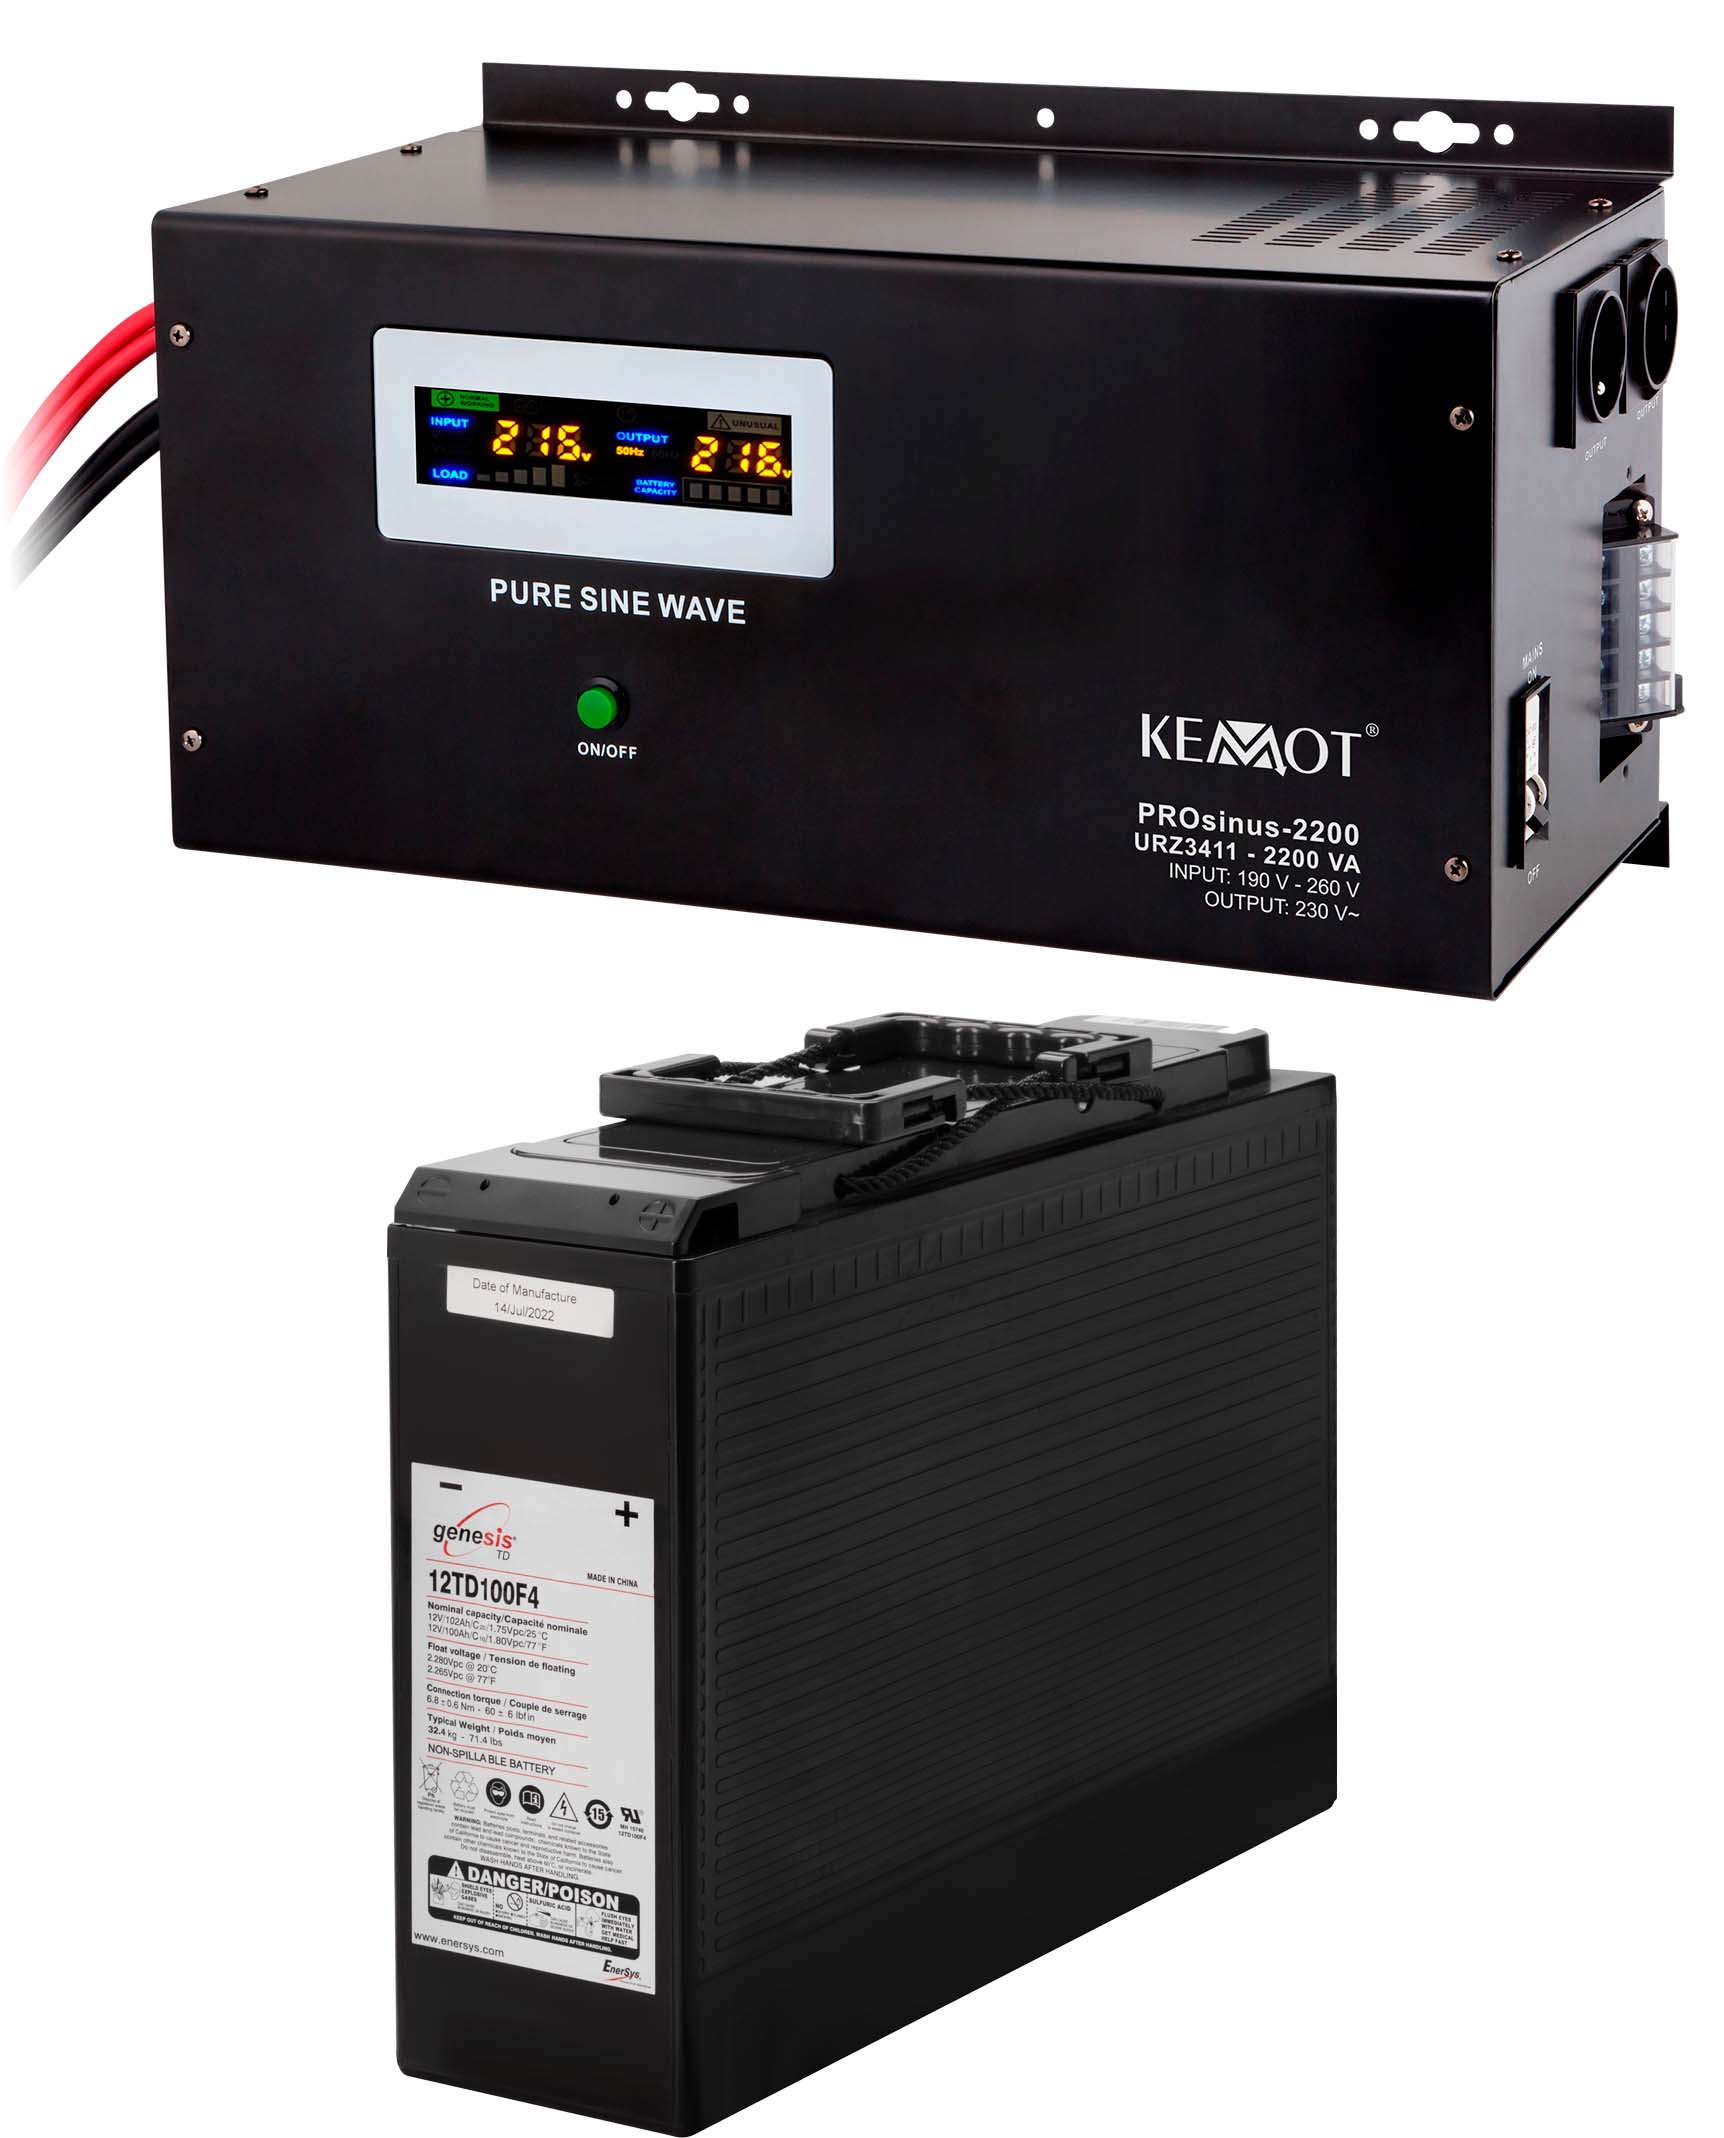 Джерело безперебійного живлення Kemot PROSinus-2200 (URZ3411)+акумулятор Genesis 12TD100F4 (12V100Ah) в інтернет-магазині, головне фото